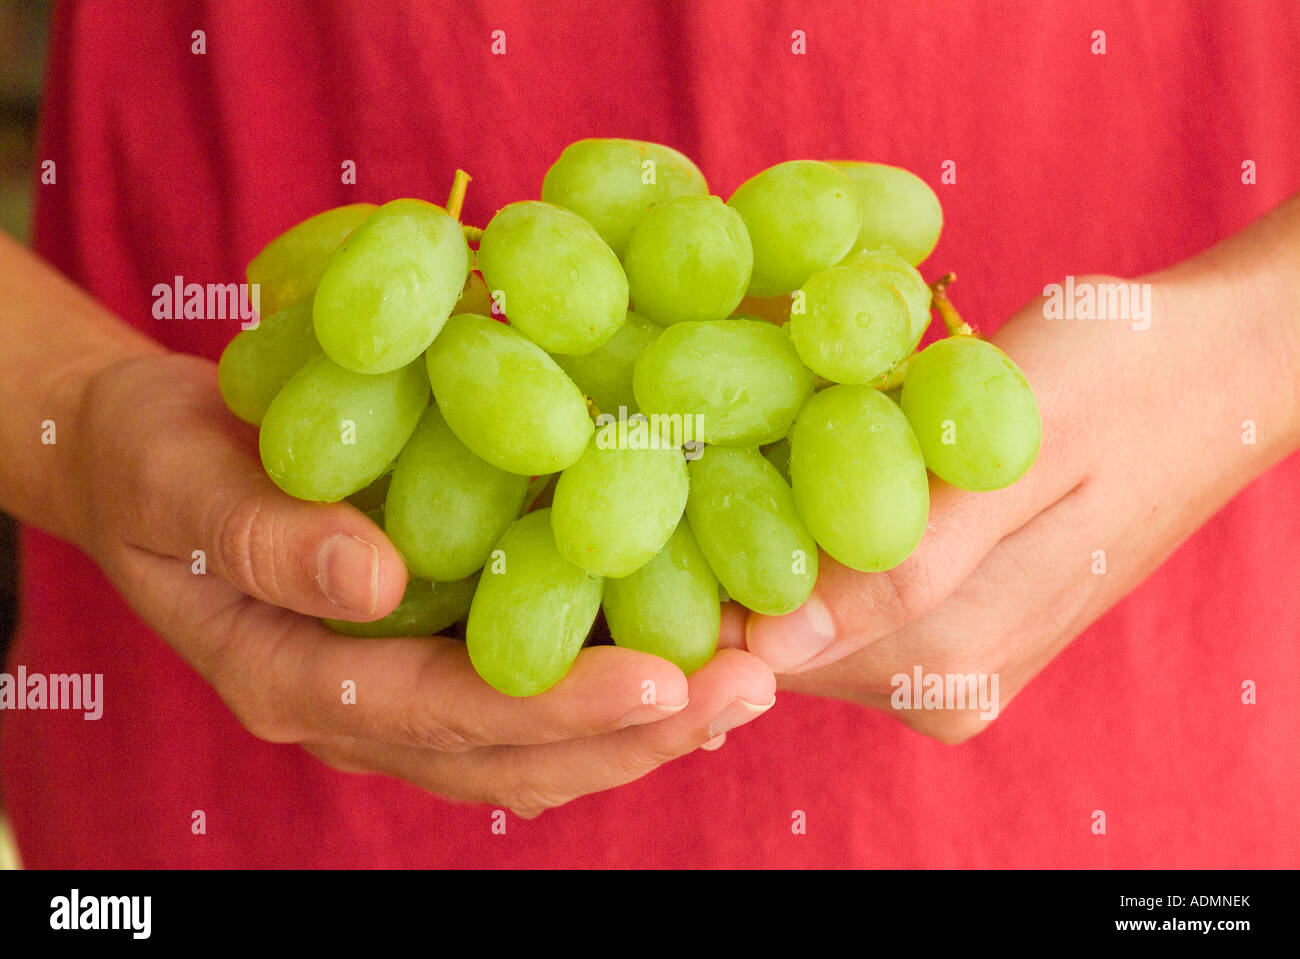 Femmes Mûres, berçant des raisins sans pépins blancs sains frais Banque D'Images